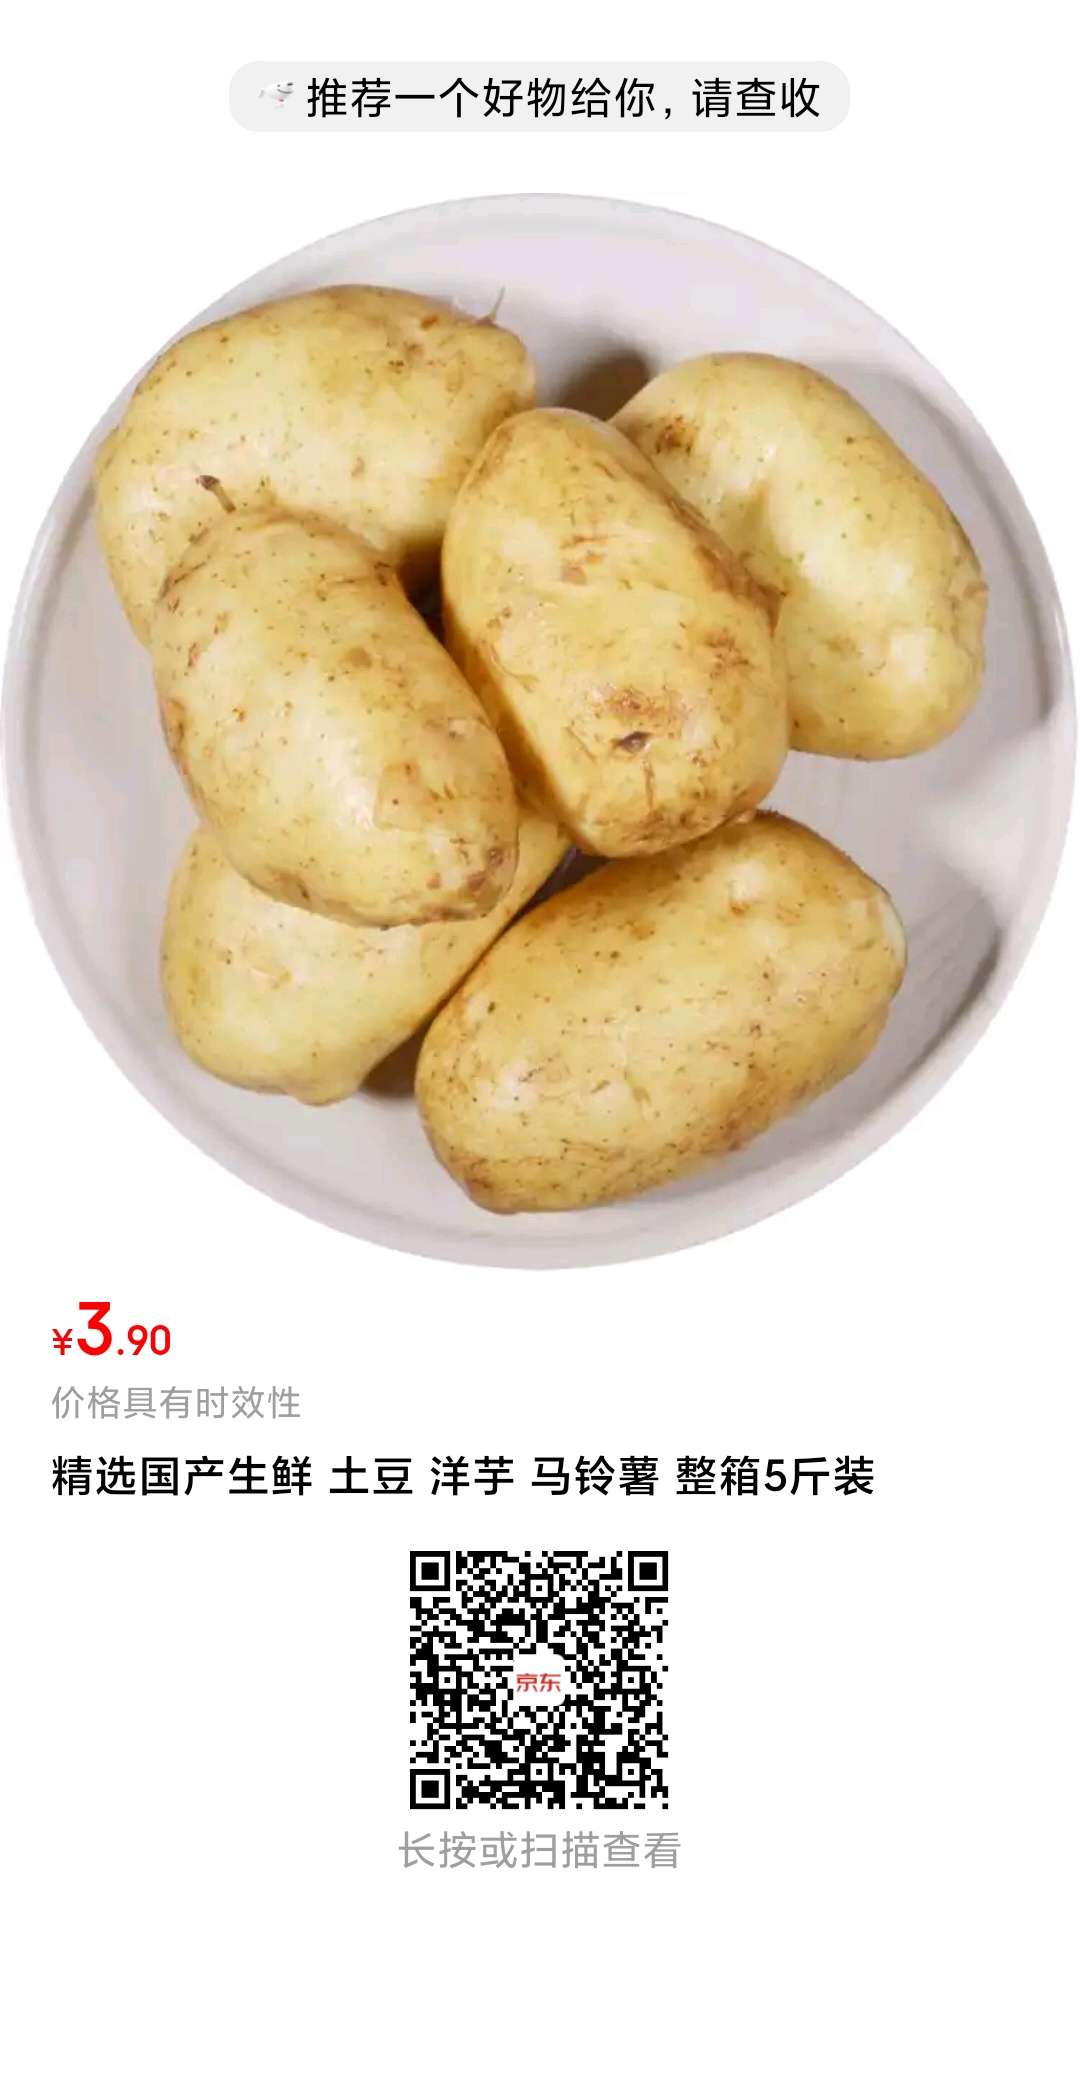 3.9元五斤土豆-有红包的一分钱搞定-惠小助(52huixz.com)